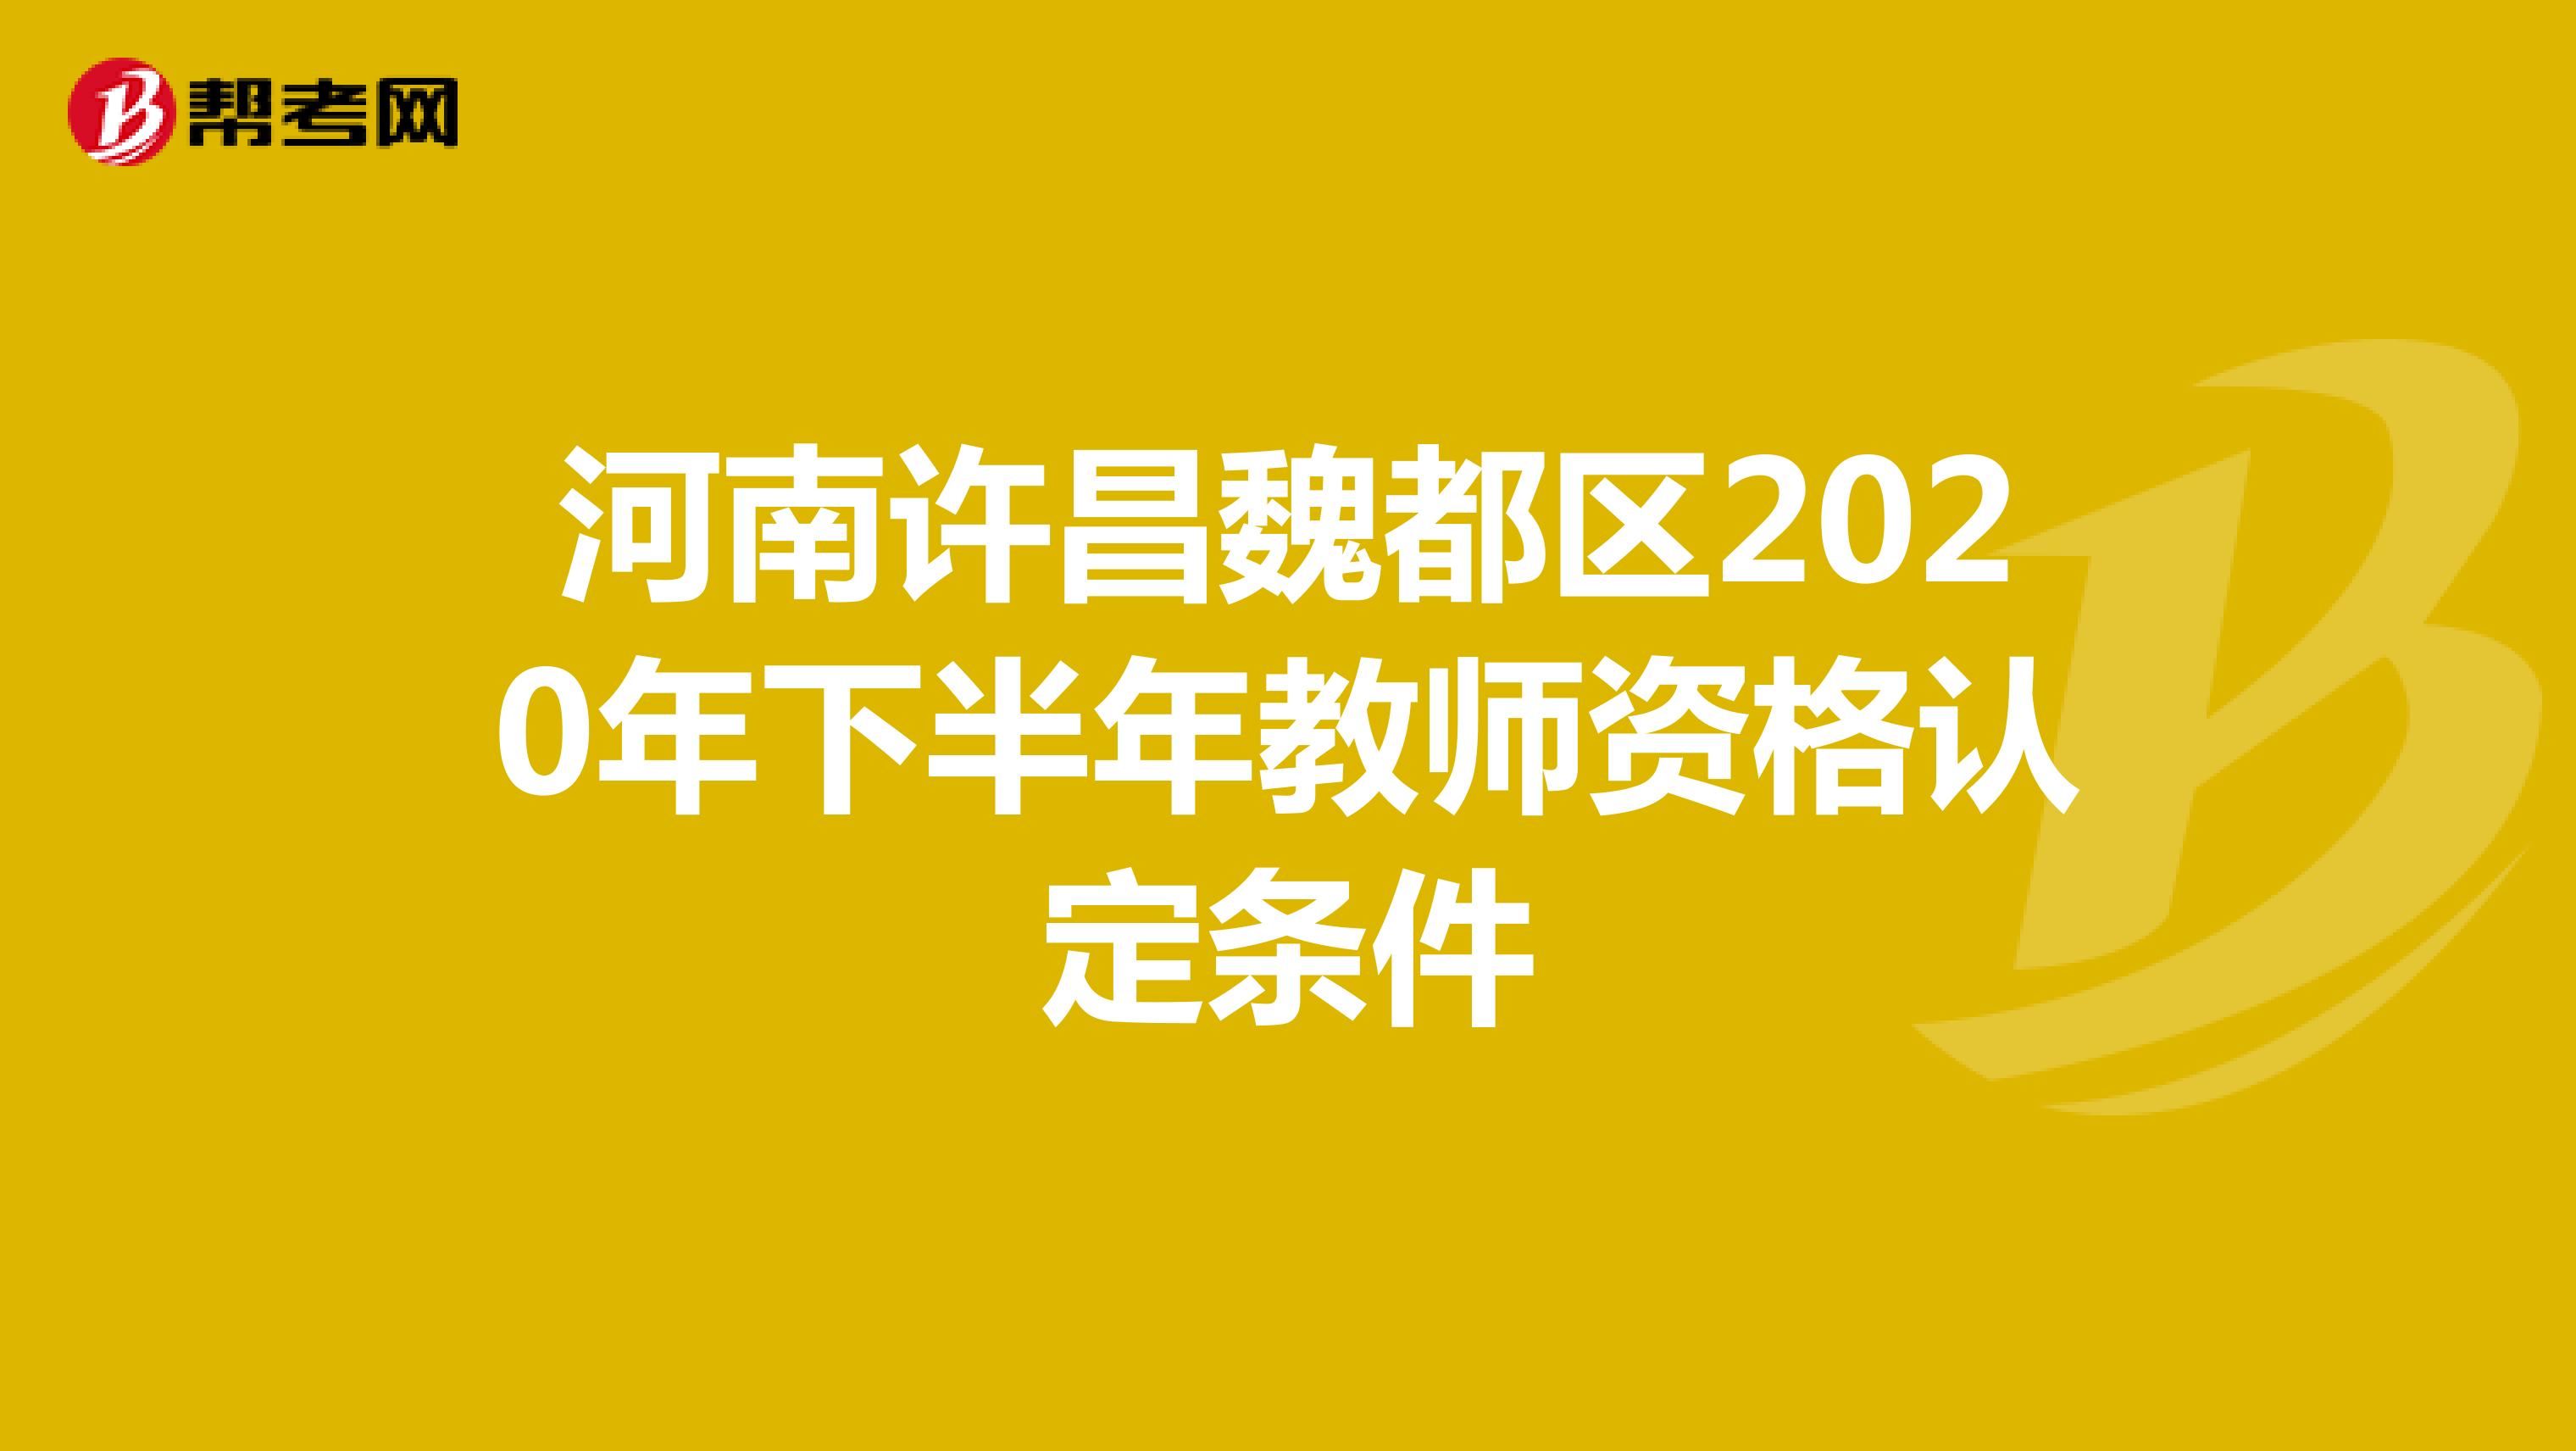 河南许昌魏都区2020年下半年教师资格认定条件